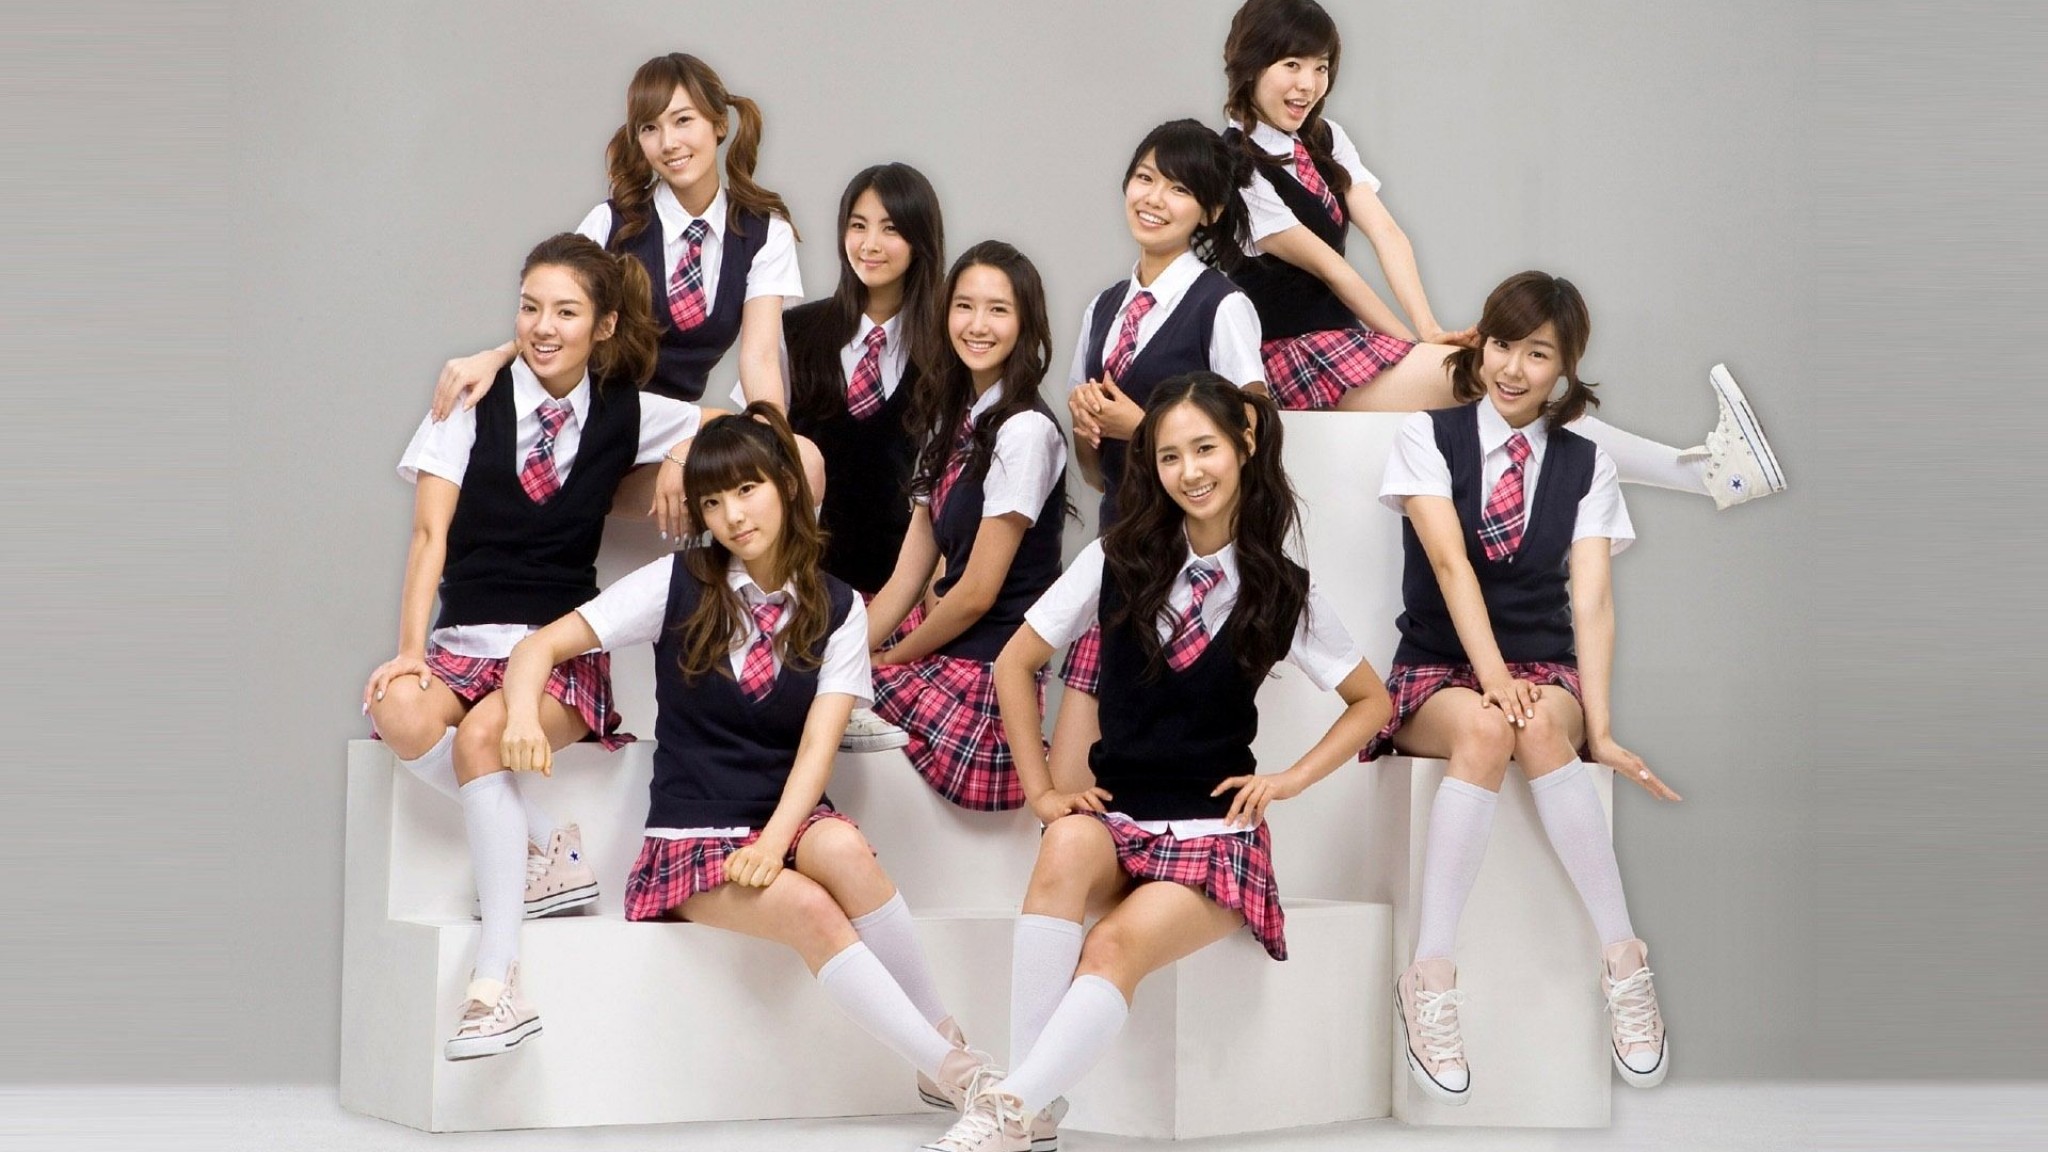 Тг группа девочек. Girls Generation корейская группа. Скул герлс группа. Кореянки в школьной форме. Фотосессия в школьной форме.